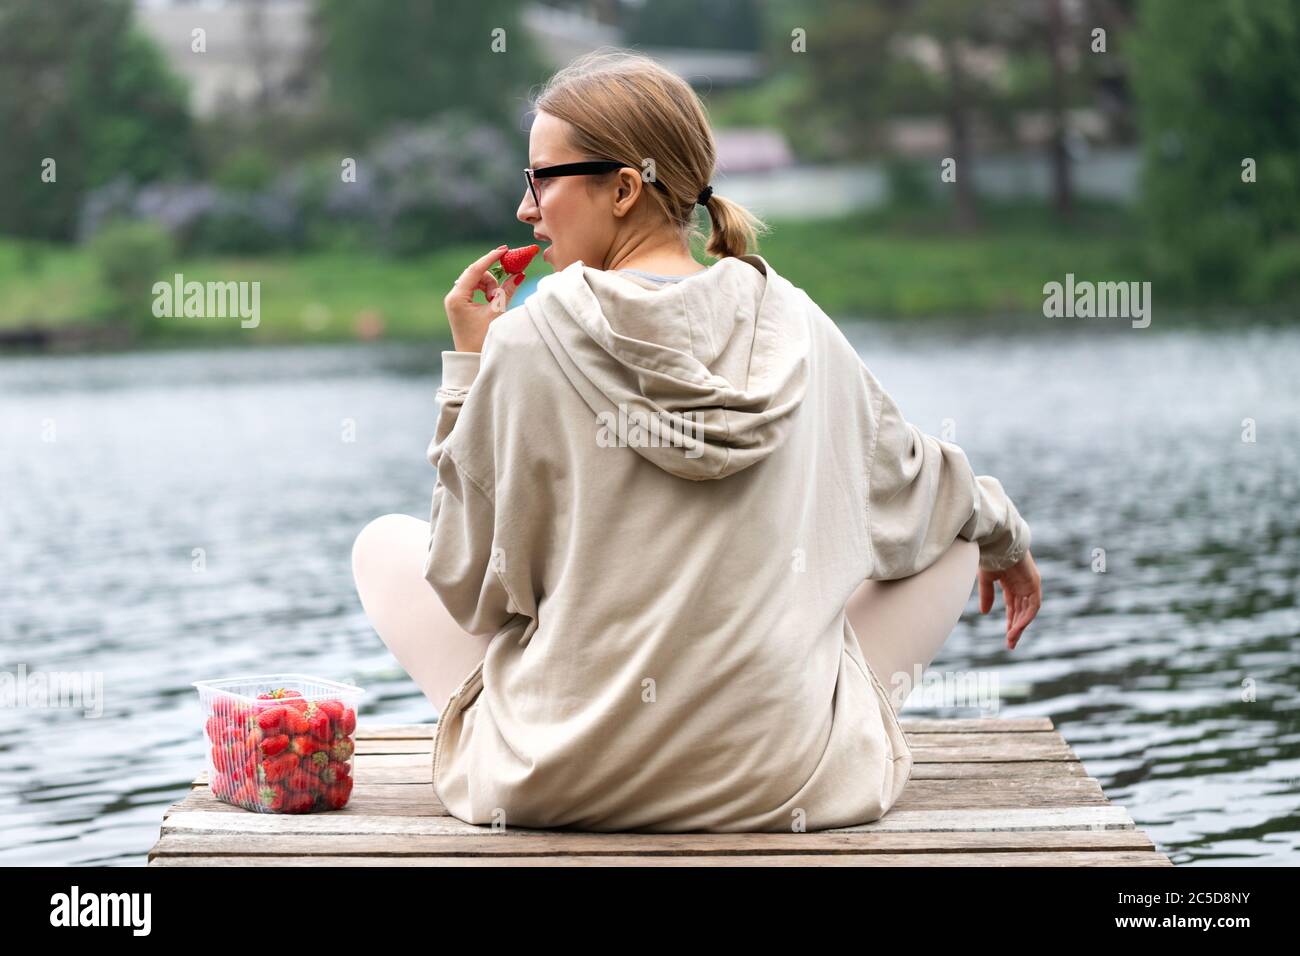 Giovane donna che mangia fragole di frutti di bosco fresche in contenitore di plastica, poggiando su un molo di legno del fiume, vista posteriore. Ora legale. La gioia del paese lif Foto Stock